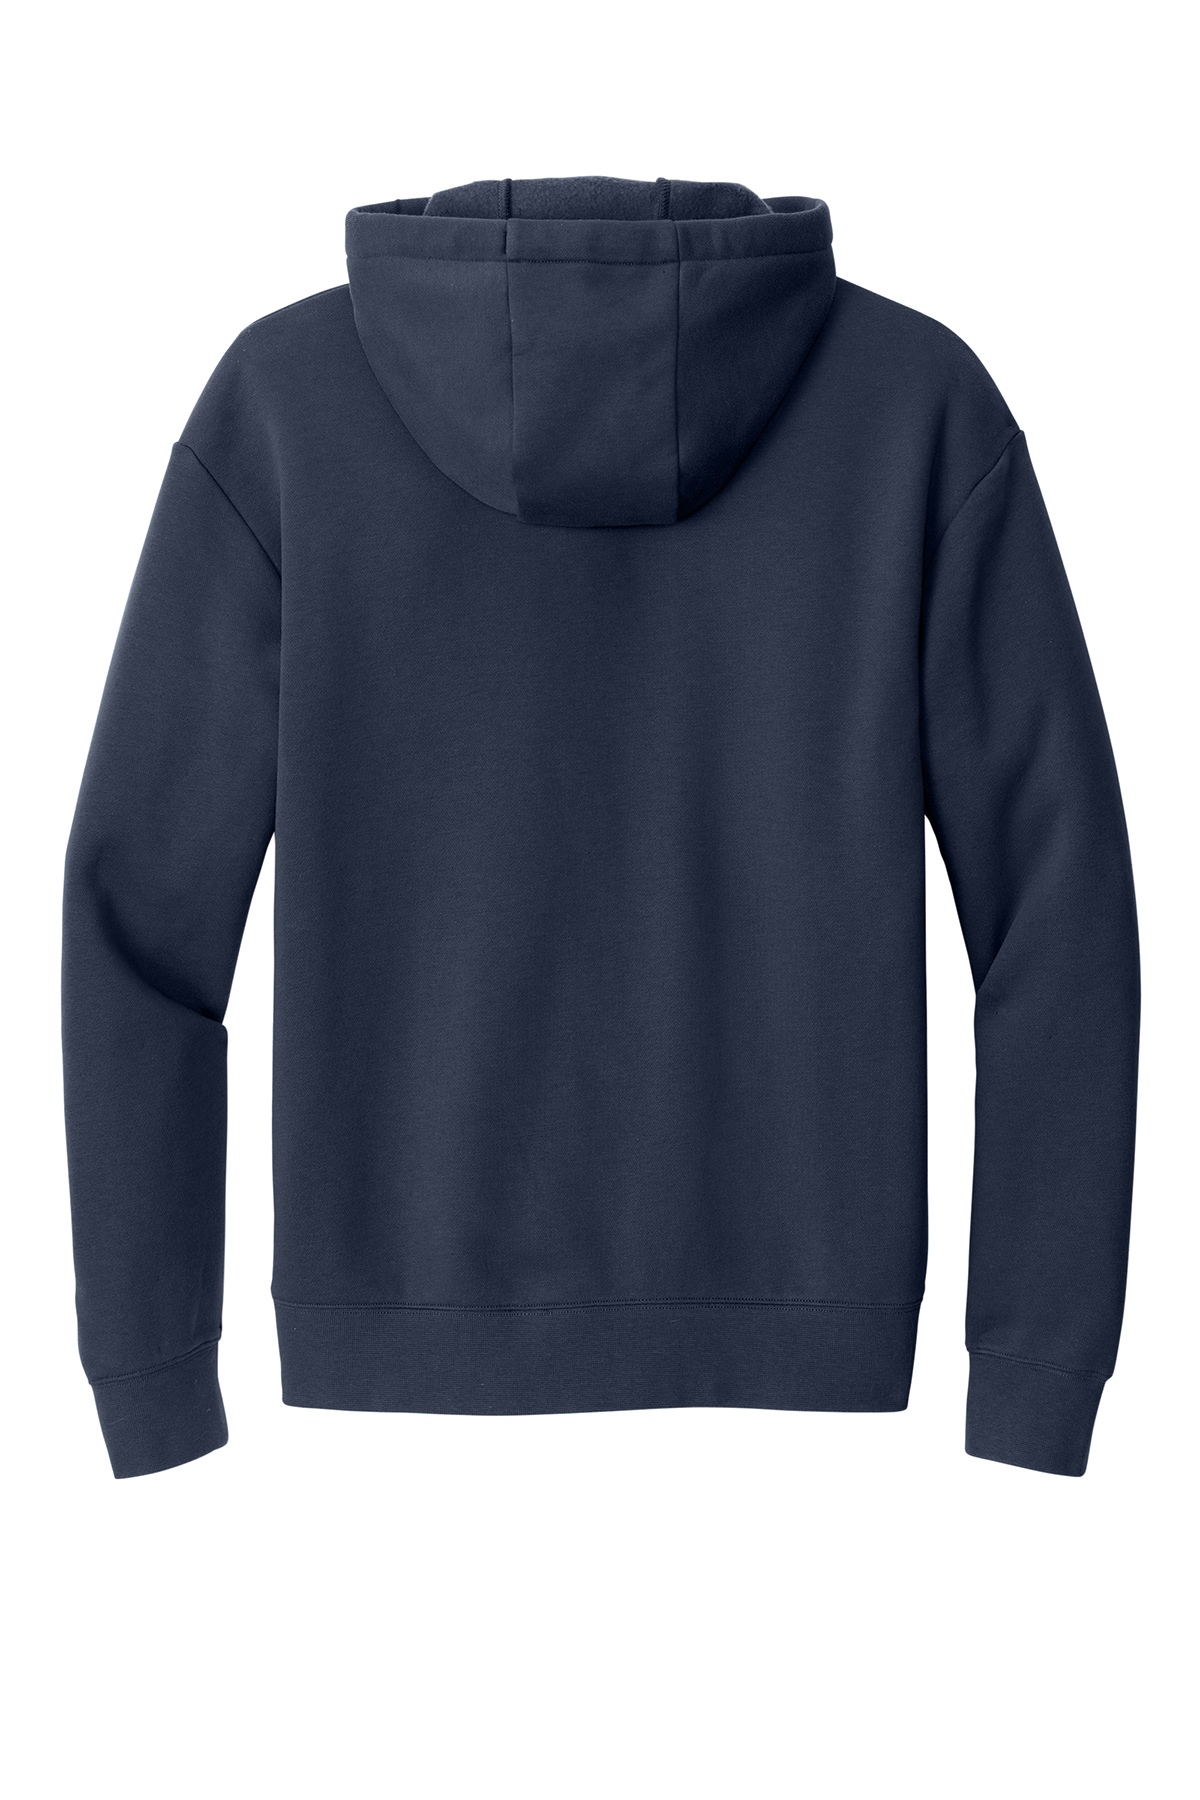 New Era Heritage Fleece Full-Zip Hoodie | Product | SanMar